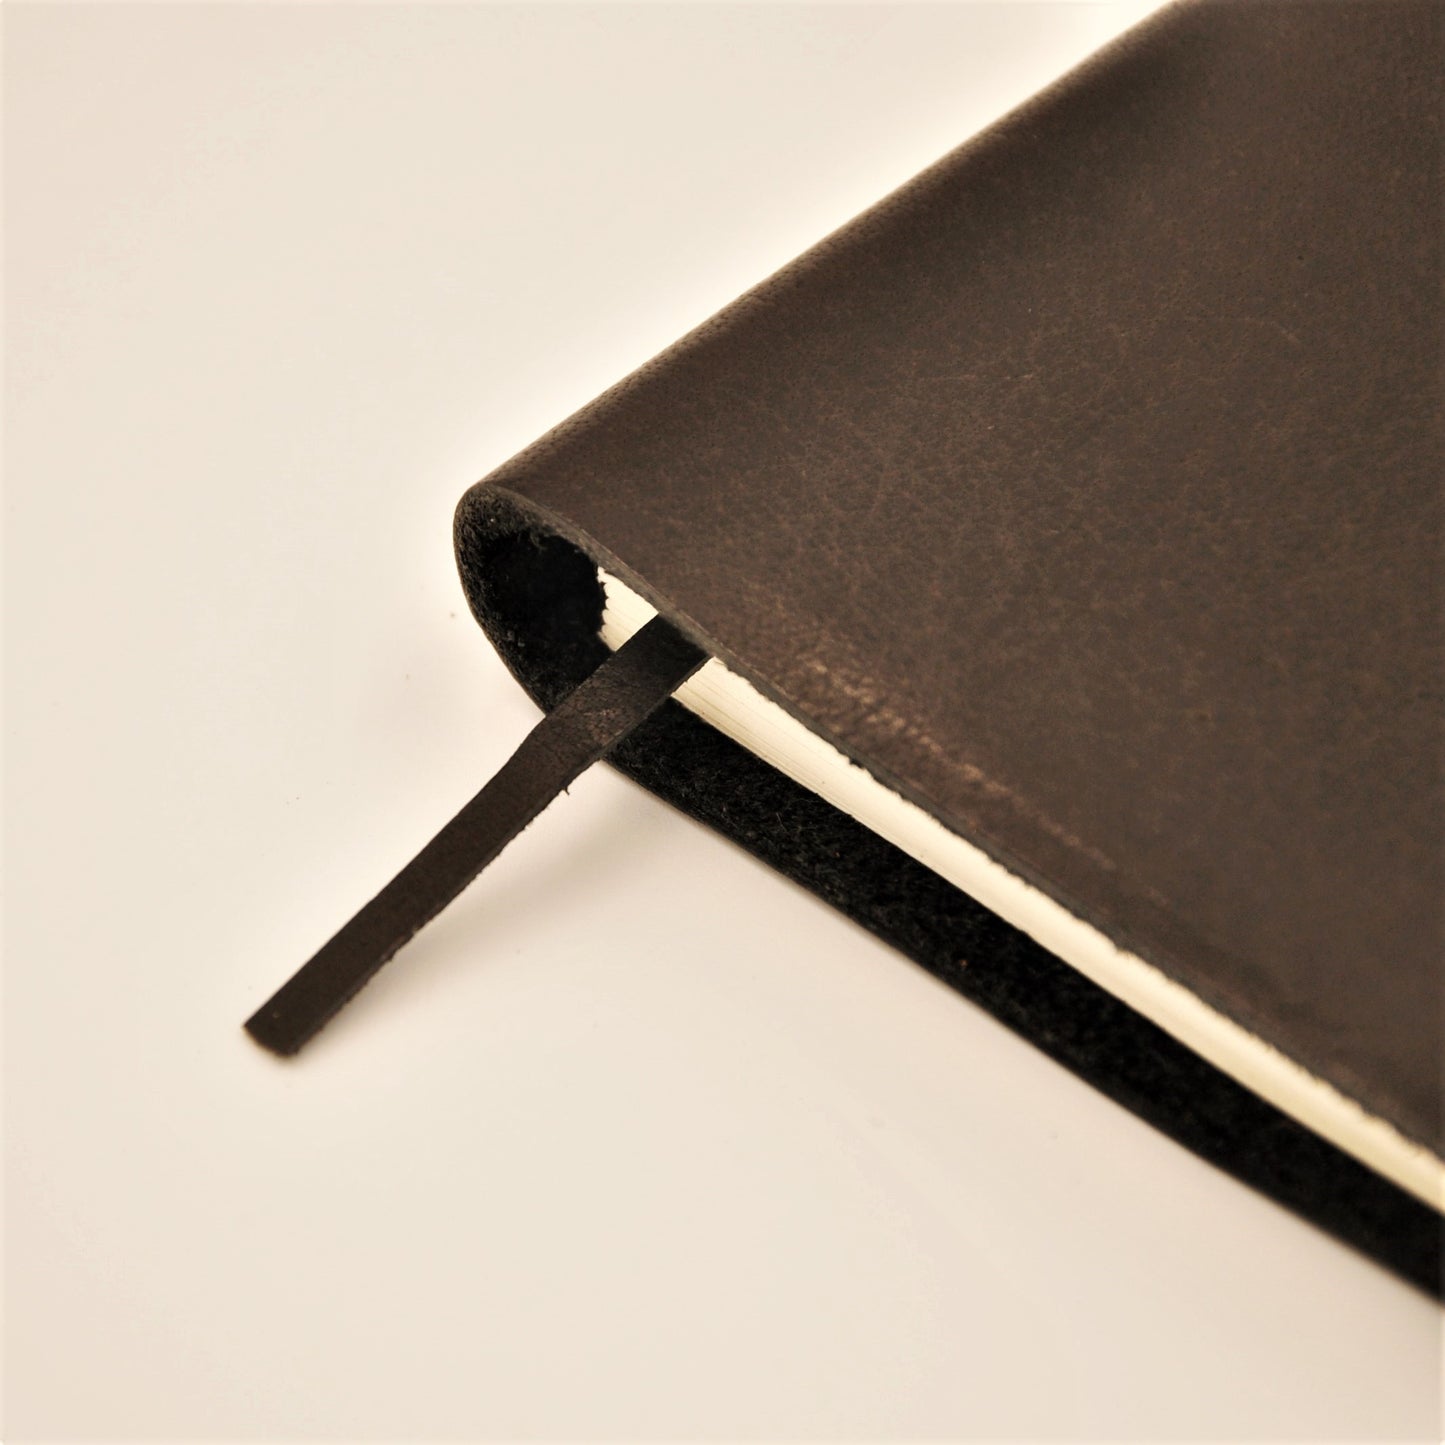 ACADEMY A5-P Leather Plain Journal